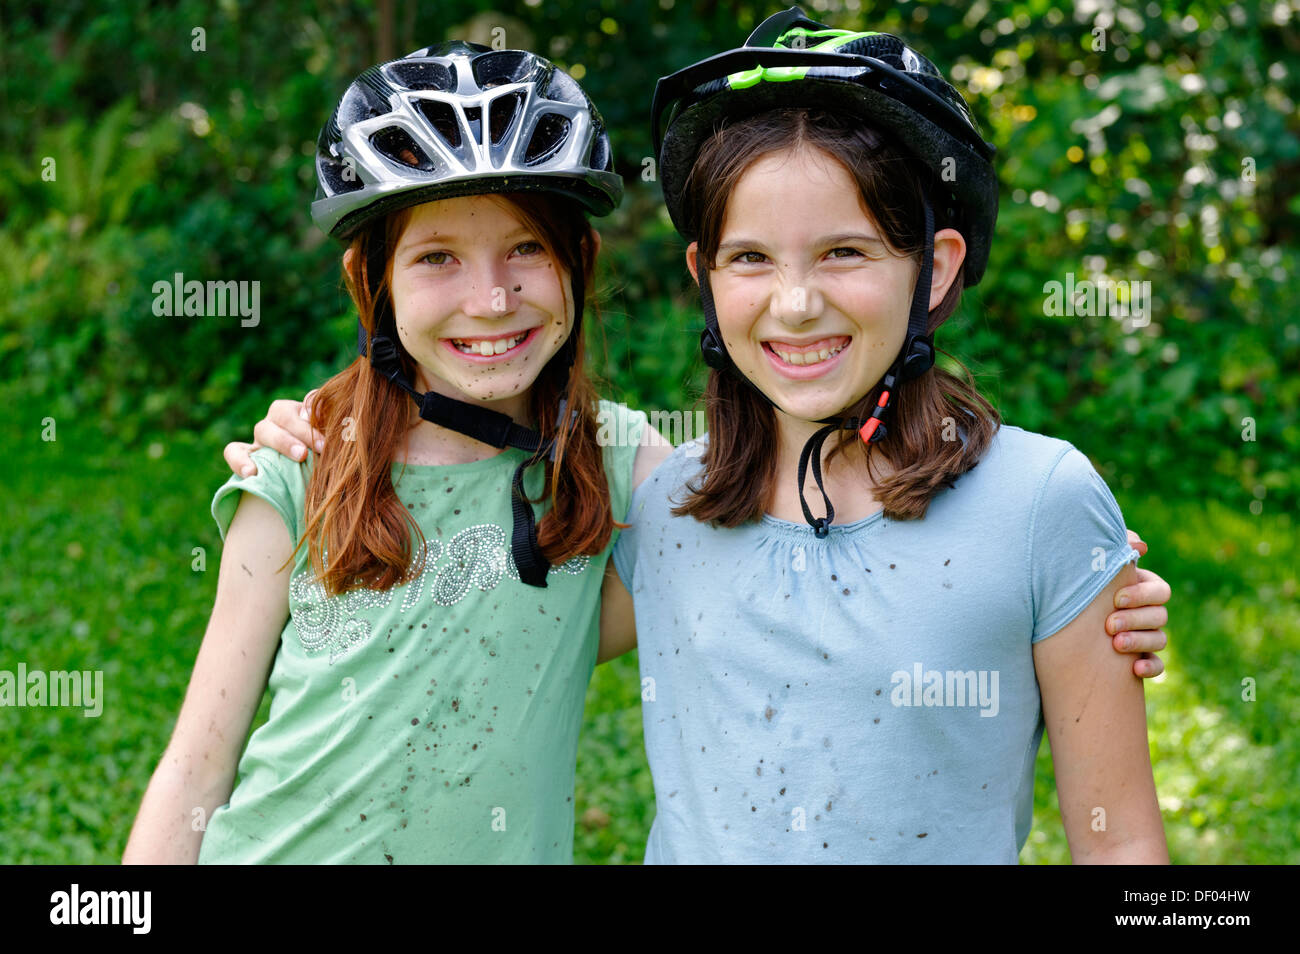 Le ragazze che indossano caschi ciclo coagulato con fango dopo un tour in mountain bike Foto Stock